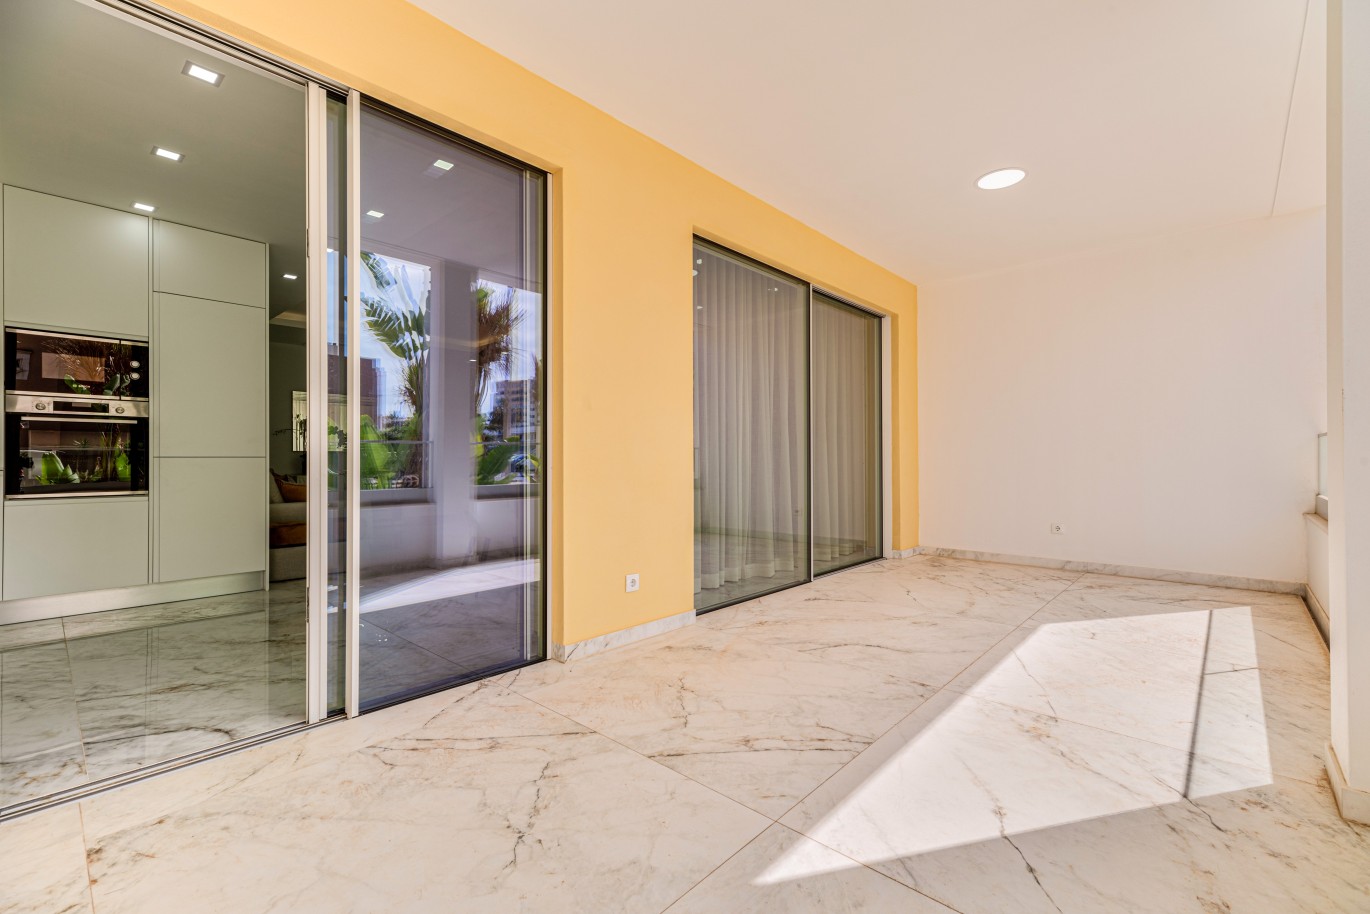 Apartamento, com terraço, para venda, em Lagos, Algarve_238450